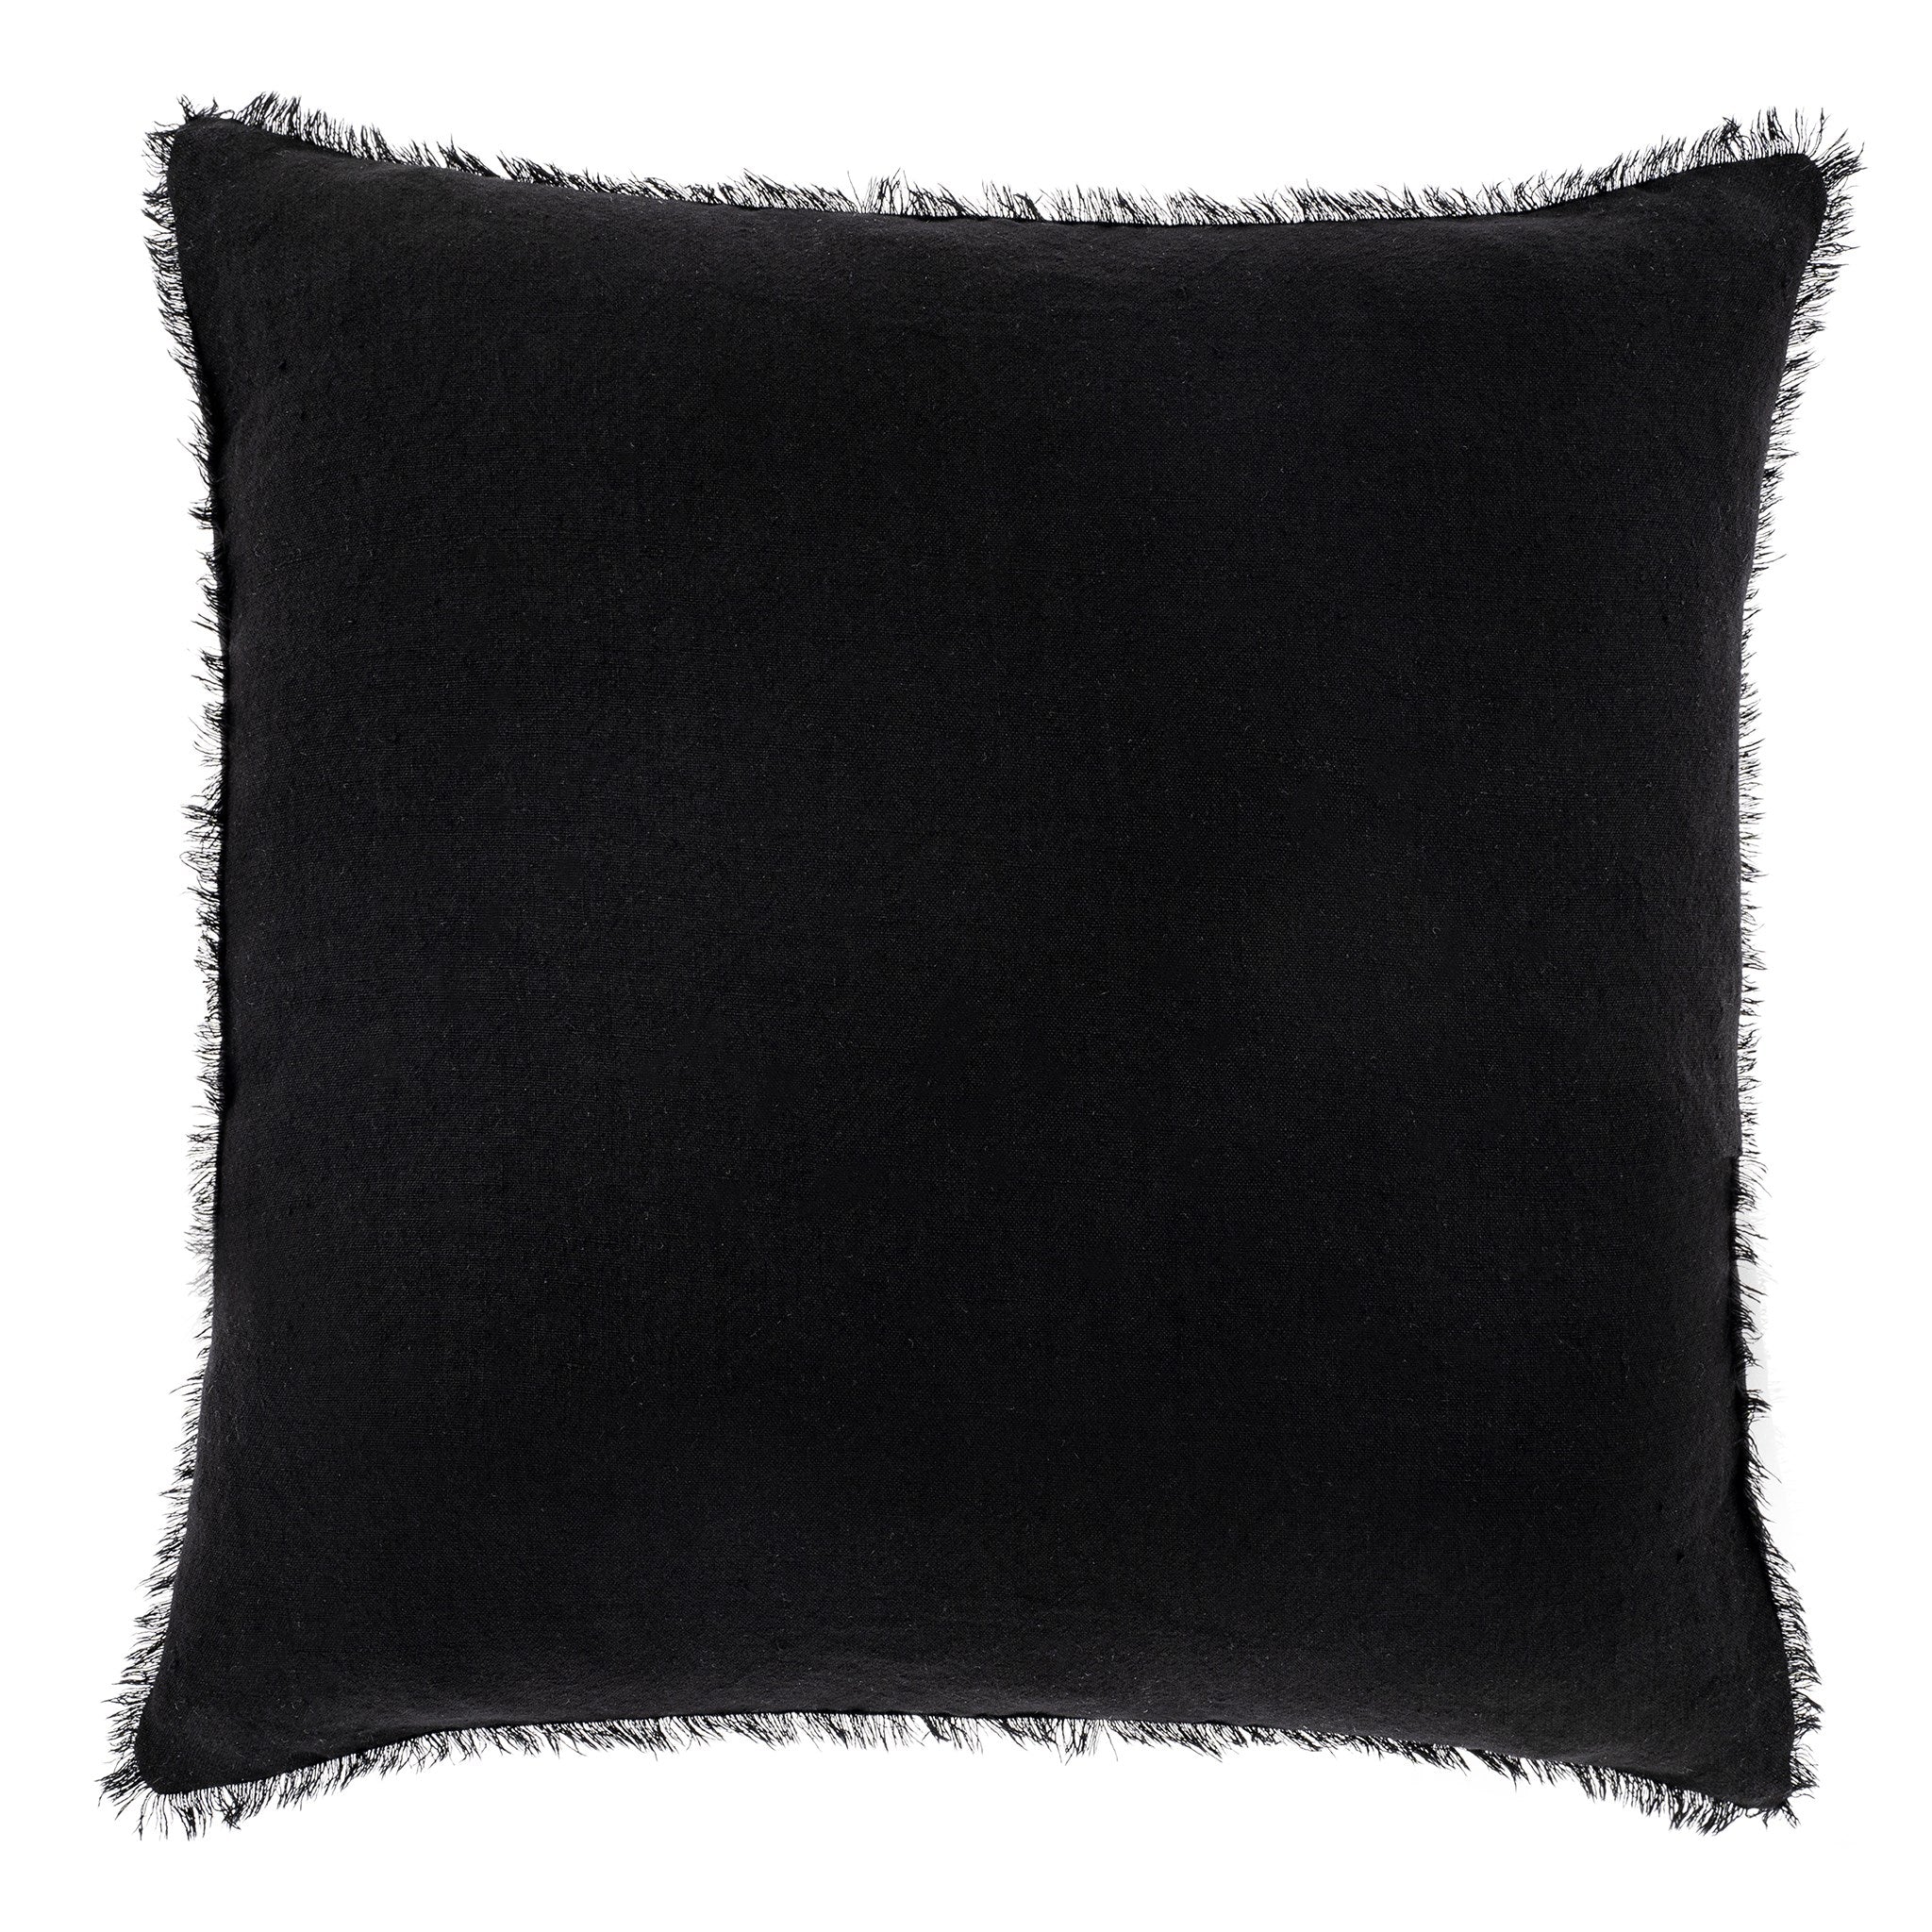 Euro Black Pillow